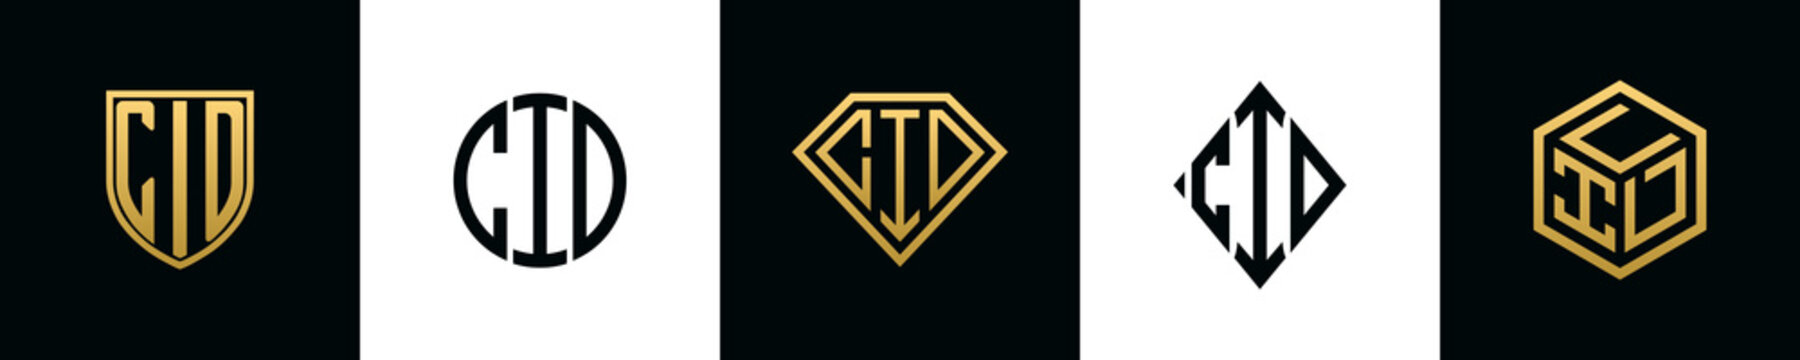 Initial letters CID logo designs Bundle